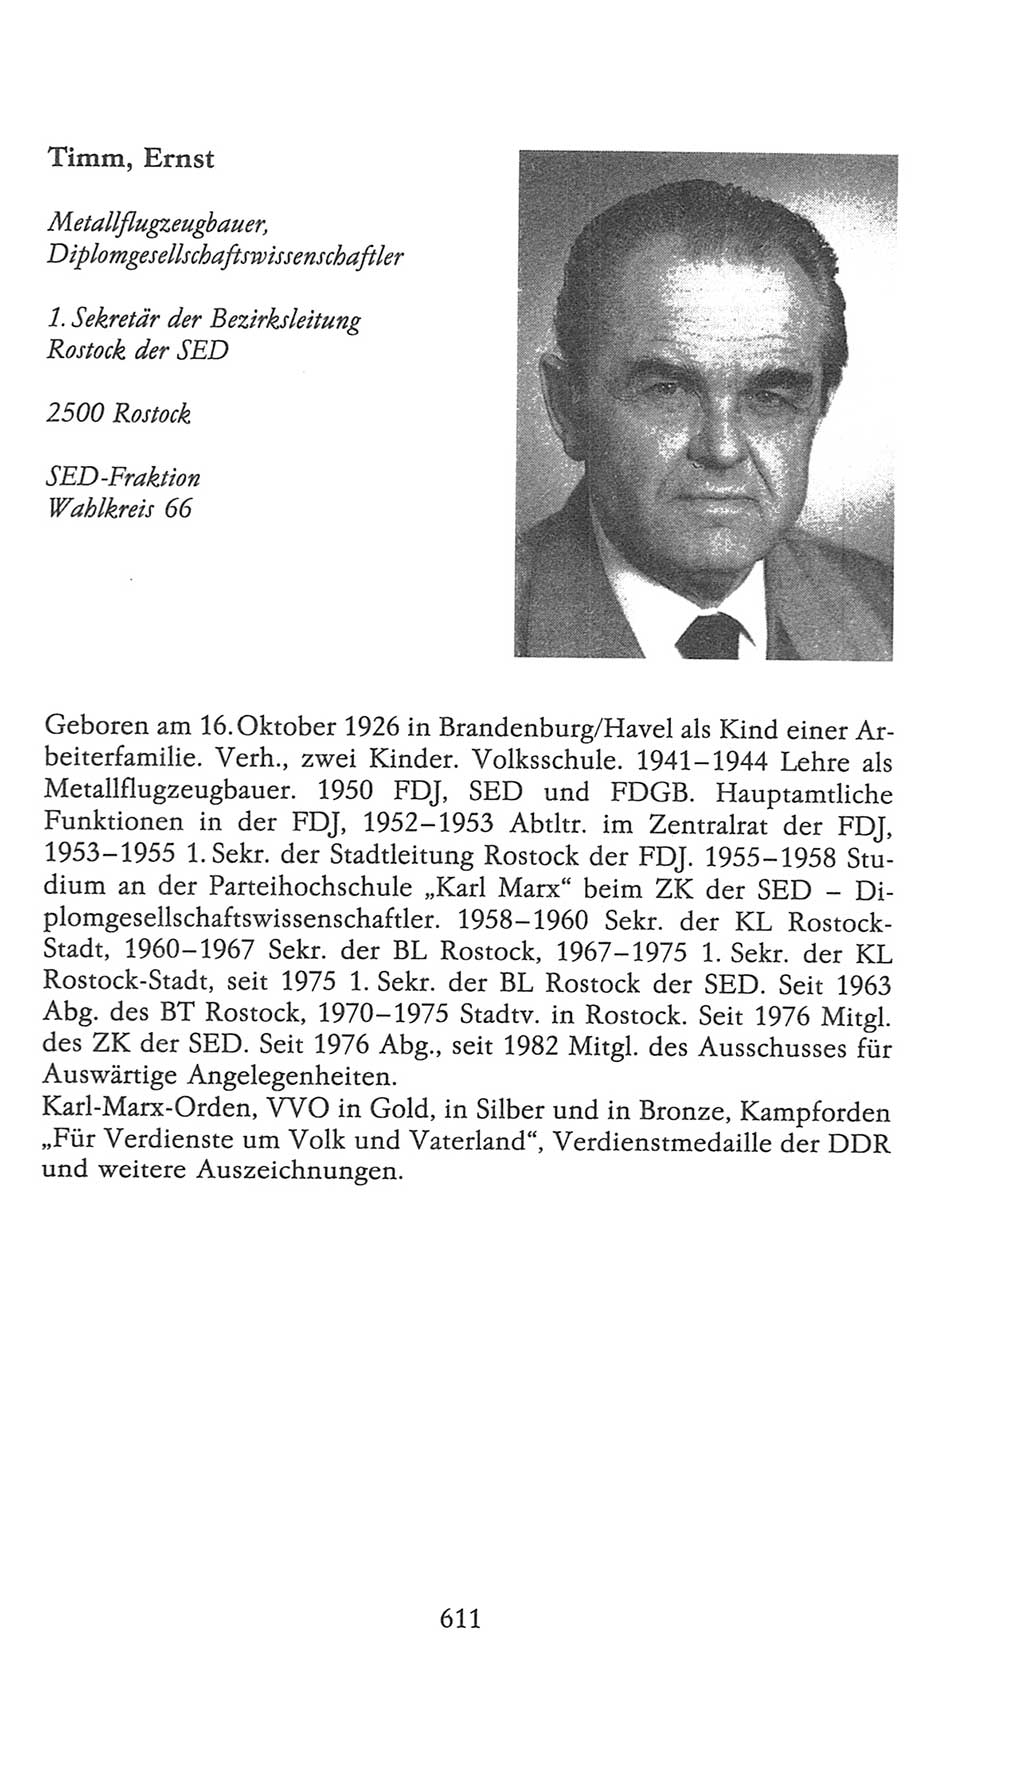 Volkskammer (VK) der Deutschen Demokratischen Republik (DDR), 9. Wahlperiode 1986-1990, Seite 611 (VK. DDR 9. WP. 1986-1990, S. 611)